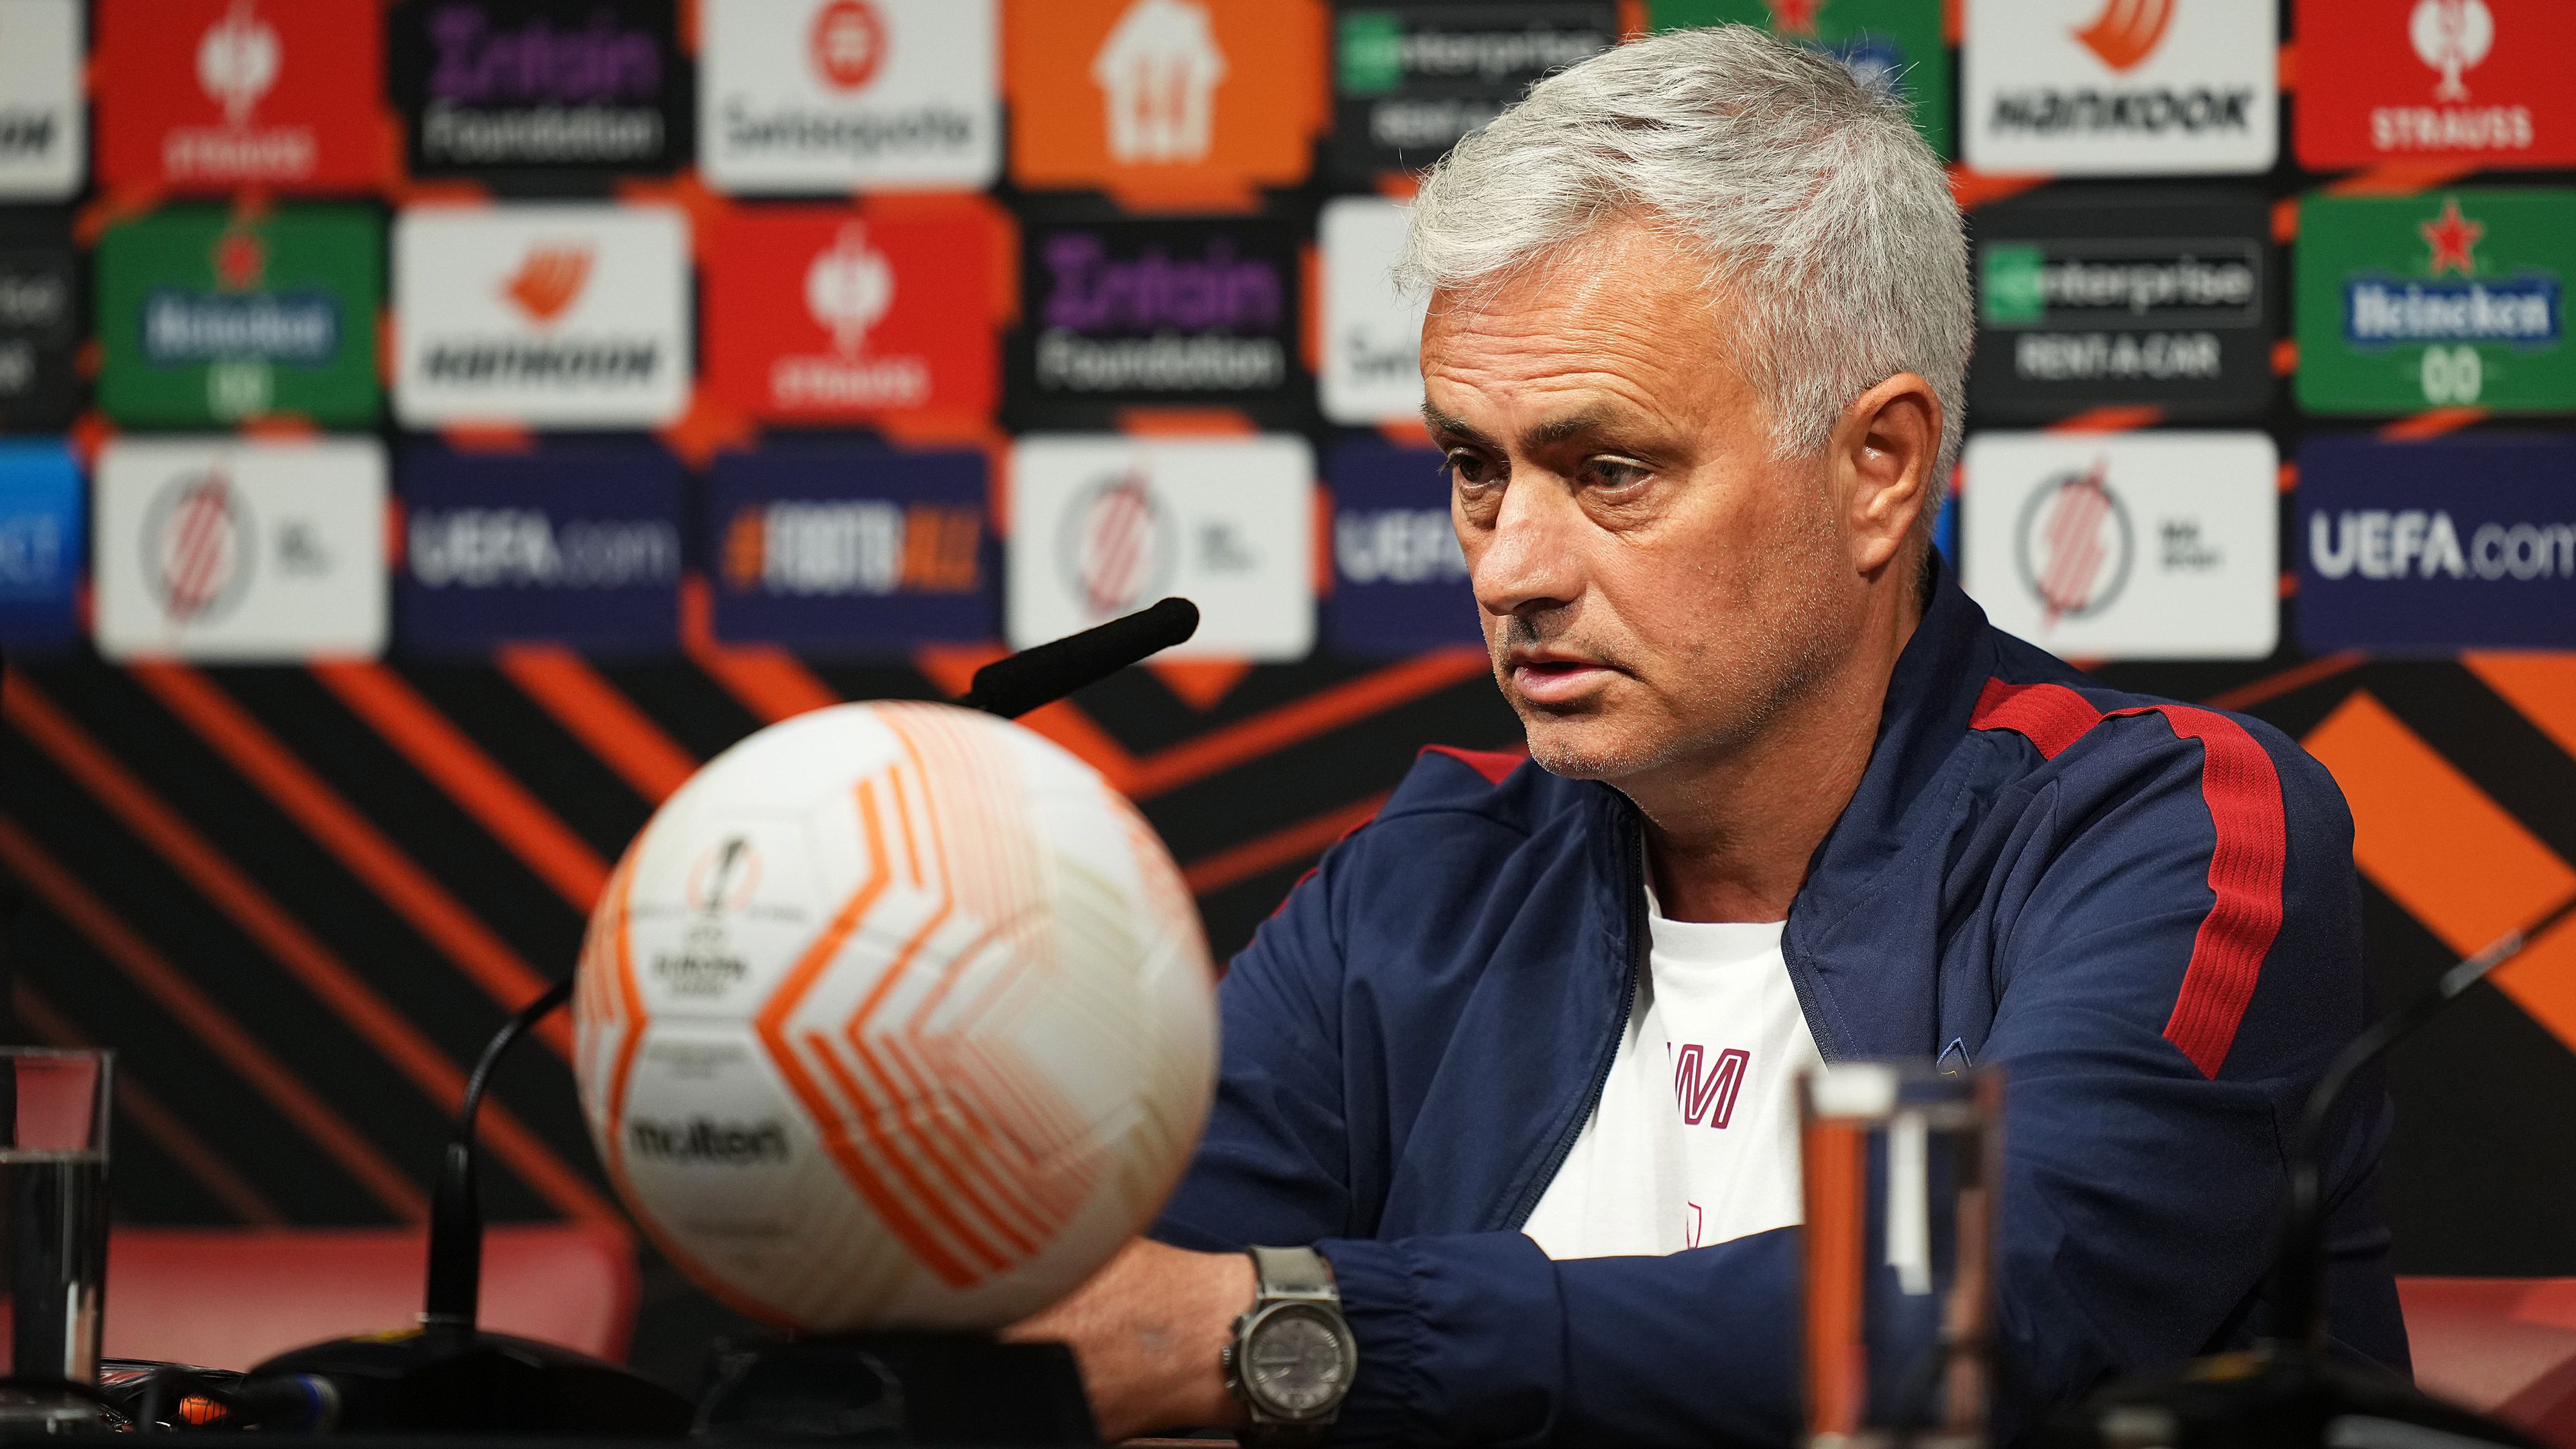 José Mourinho az Európa-liga-döntőre készülői csapatának kapitányaival már megosztotta, hogy milyen gondolatok járnak a fejében az esetleges távozásával kapcsolatban